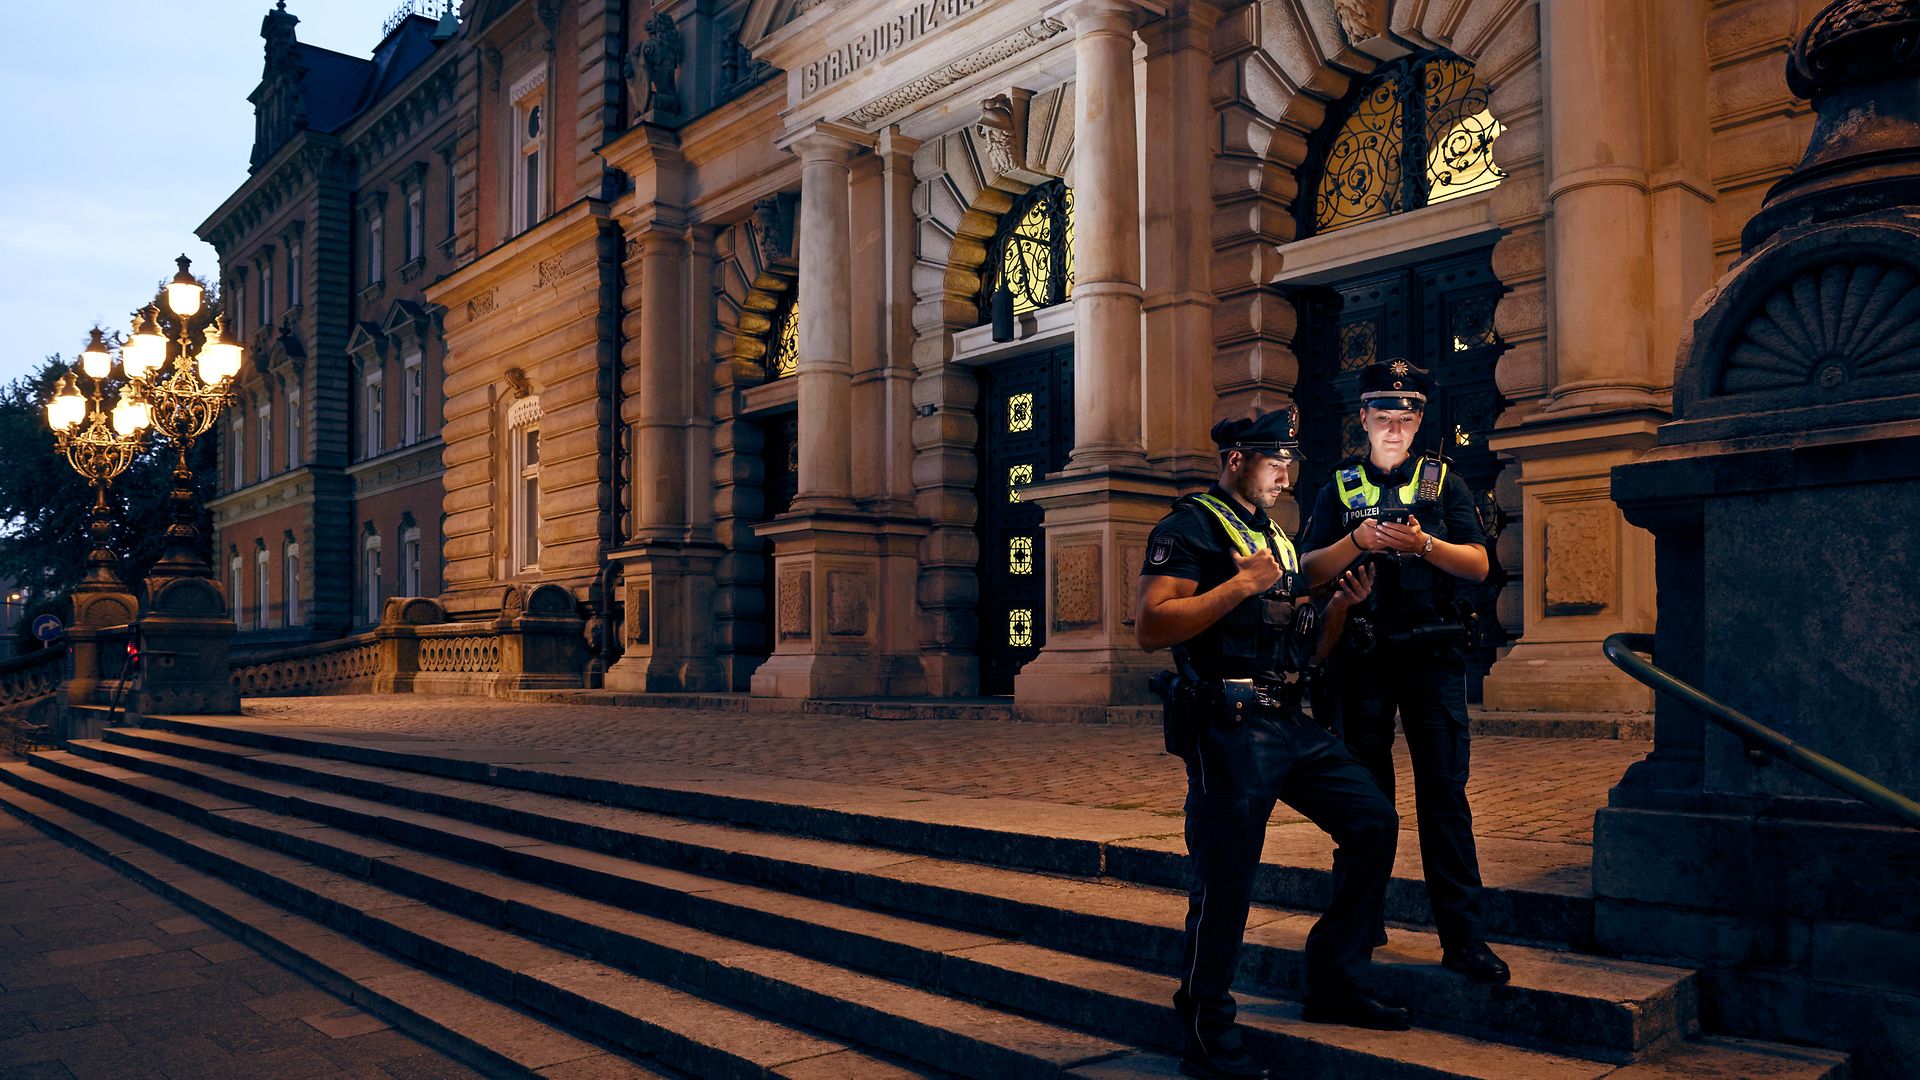 Ein Polizist und eine Polizistin stehen vor dem Strafjustiz-Gebäude und schauen auf digitale Geräte